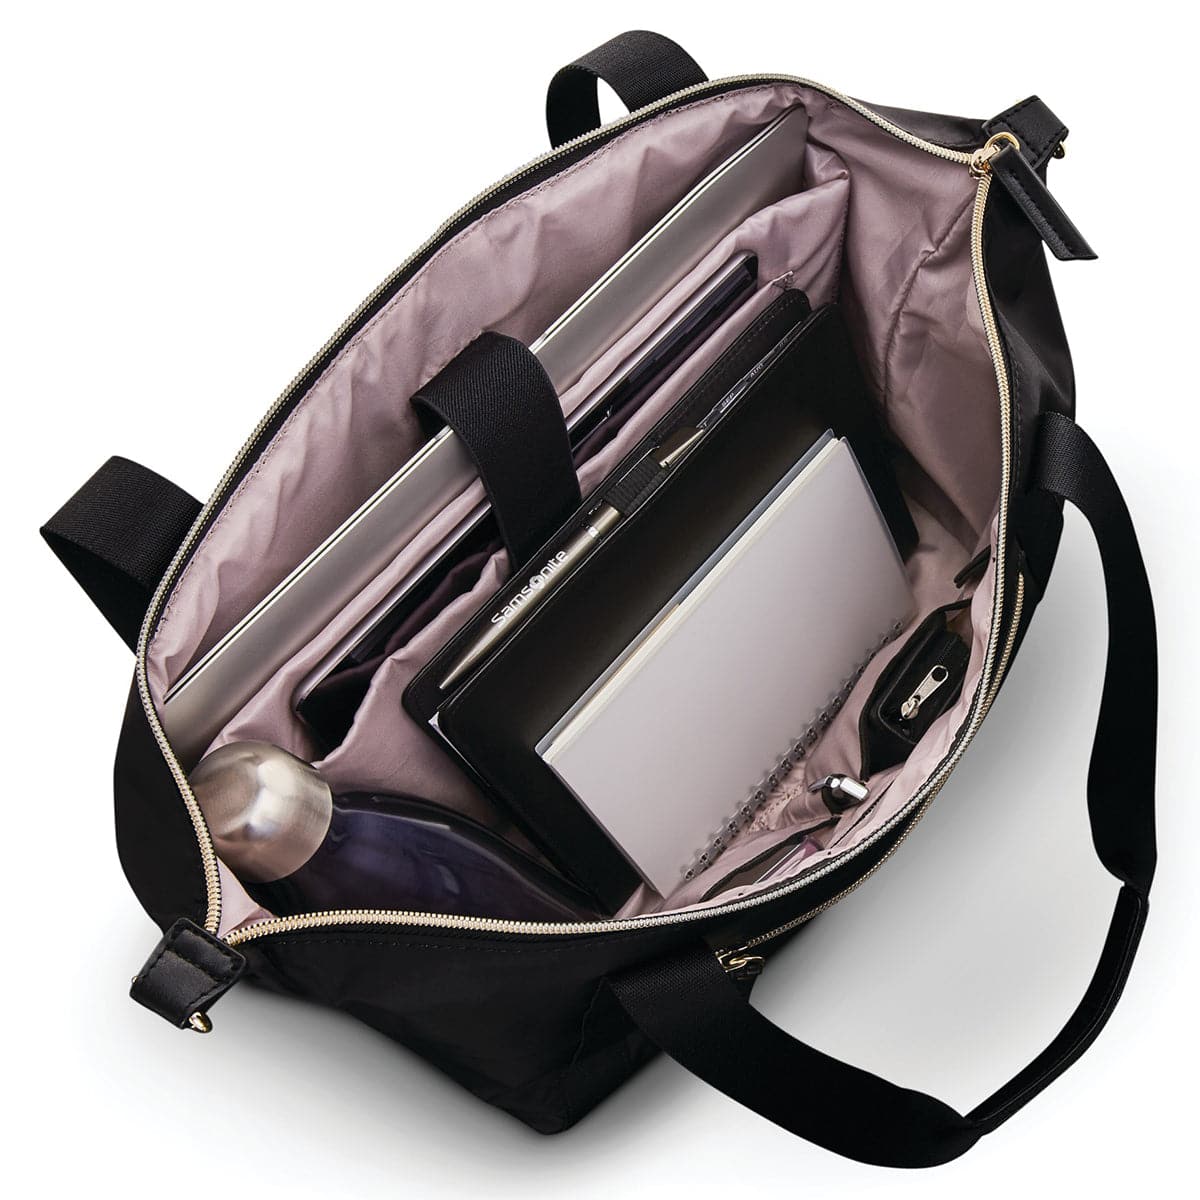 Samsonite Mobile Solution Classic Convertible Carryall Bag